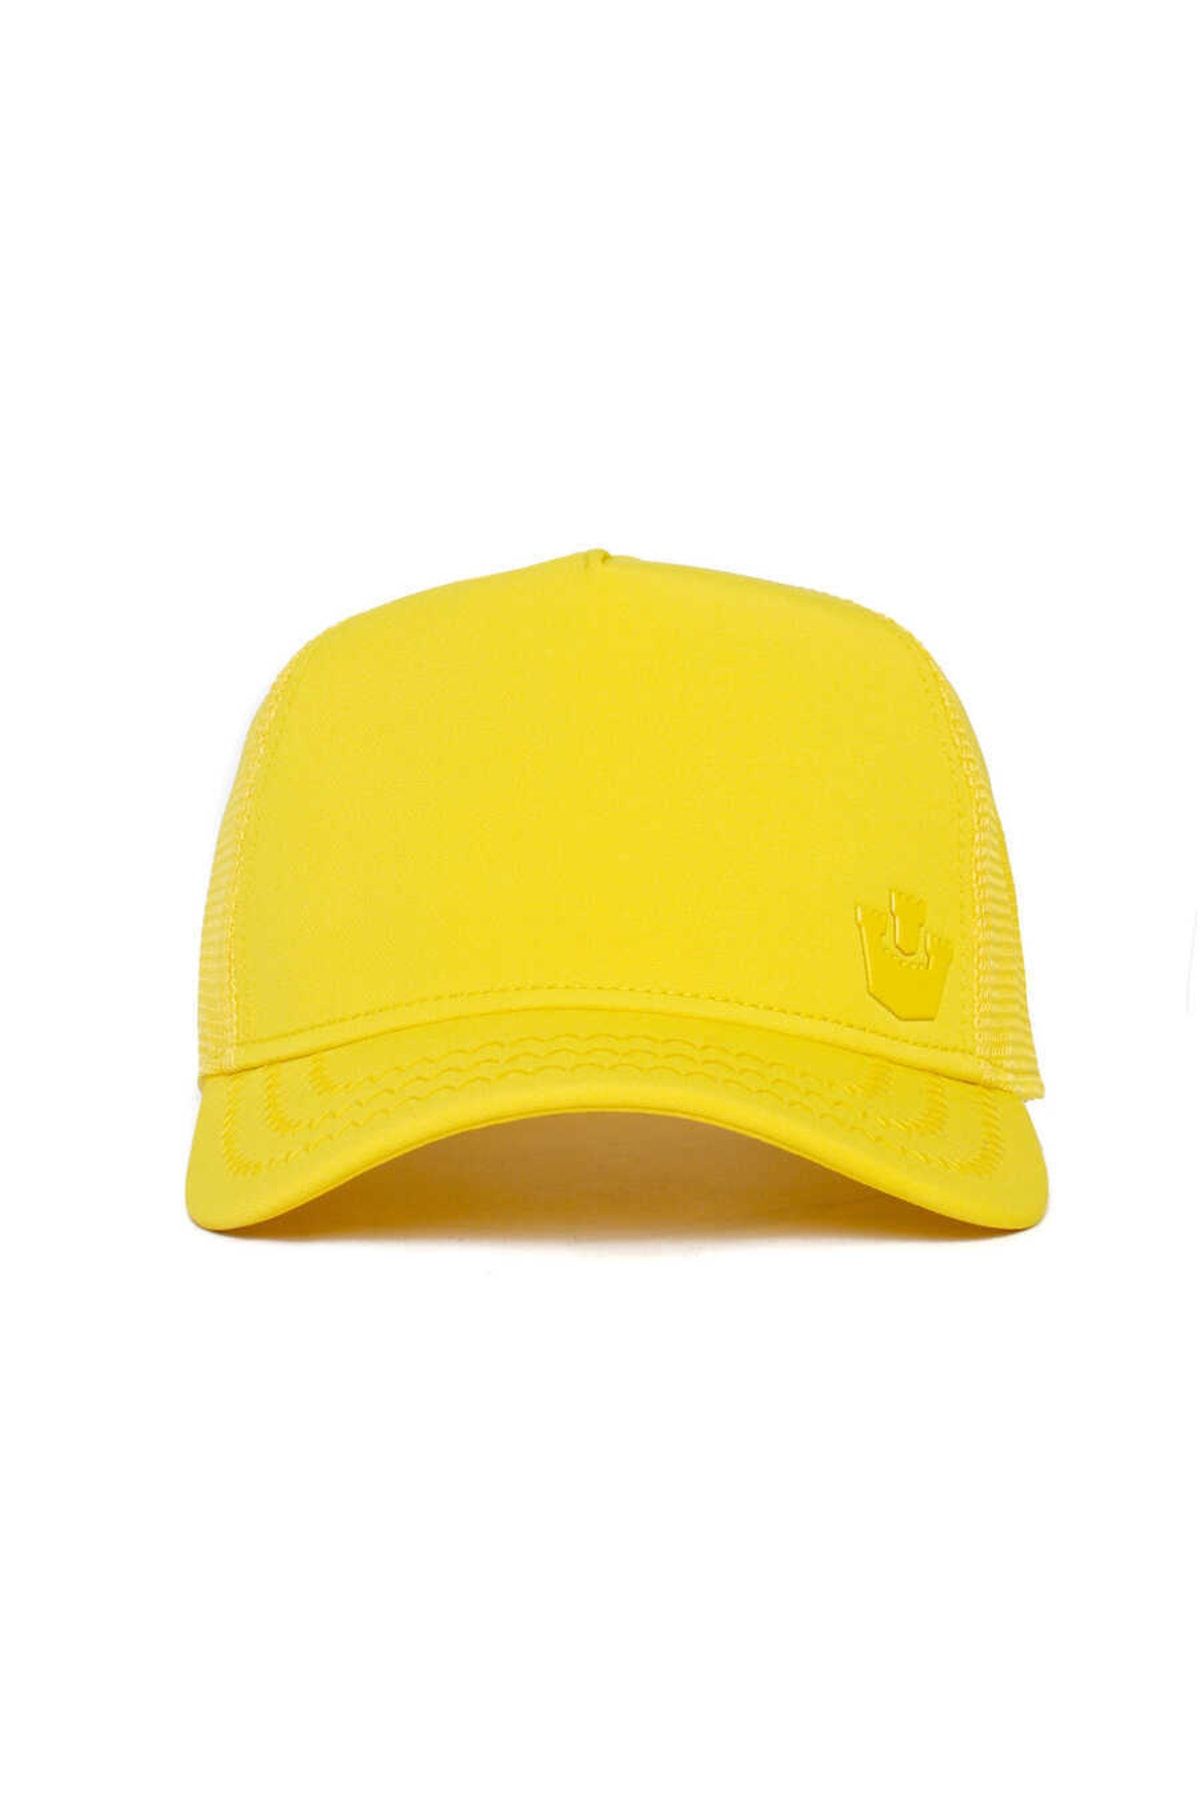 Goorin Bros Gateway Şapka 101-0784 Sarı Standart